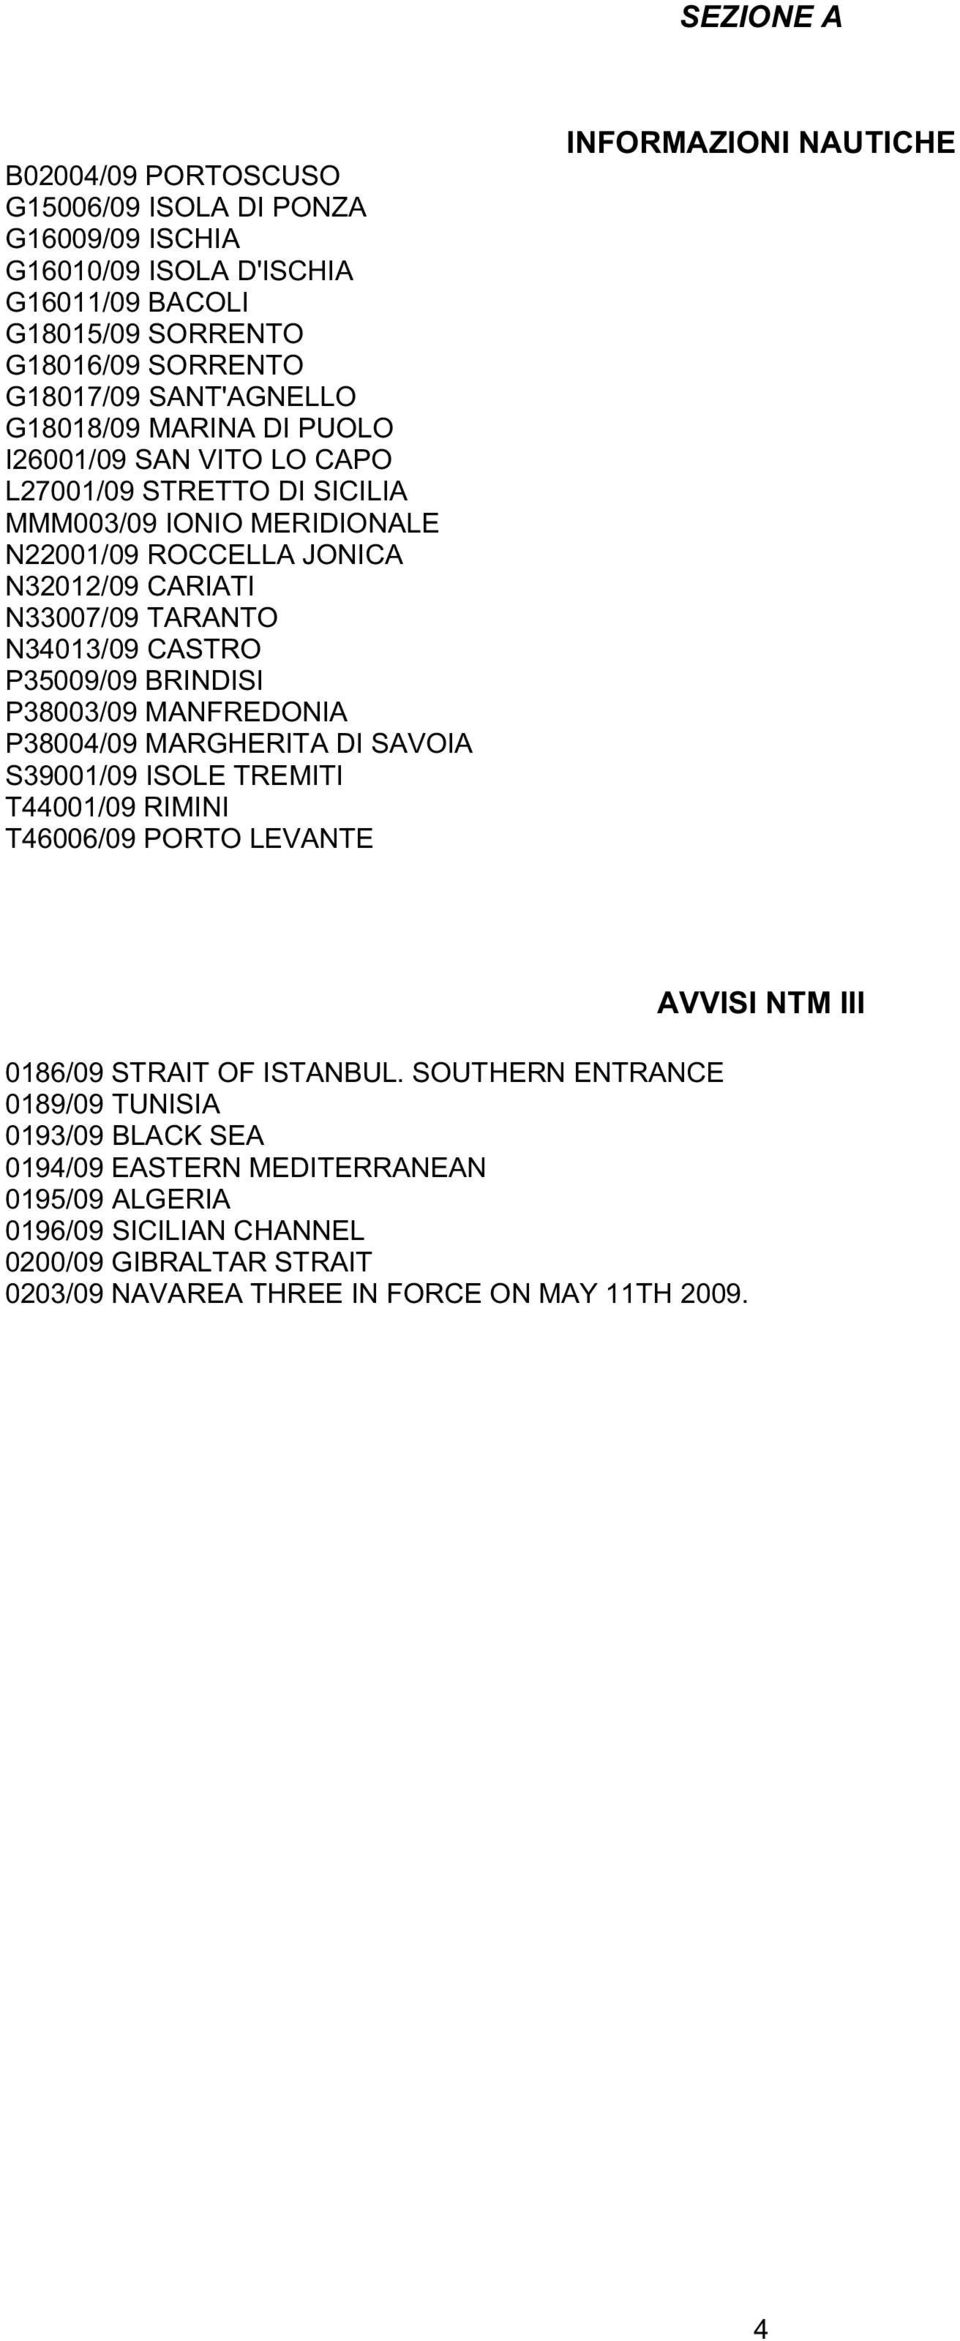 BRINDISI P38003/09 MANFREDONIA P38004/09 MARGHERITA DI SAVOIA S39001/09 ISOLE TREMITI T44001/09 RIMINI T46006/09 PORTO LEVANTE INFORMAZIONI NAUTICHE 0186/09 STRAIT OF ISTANBUL.